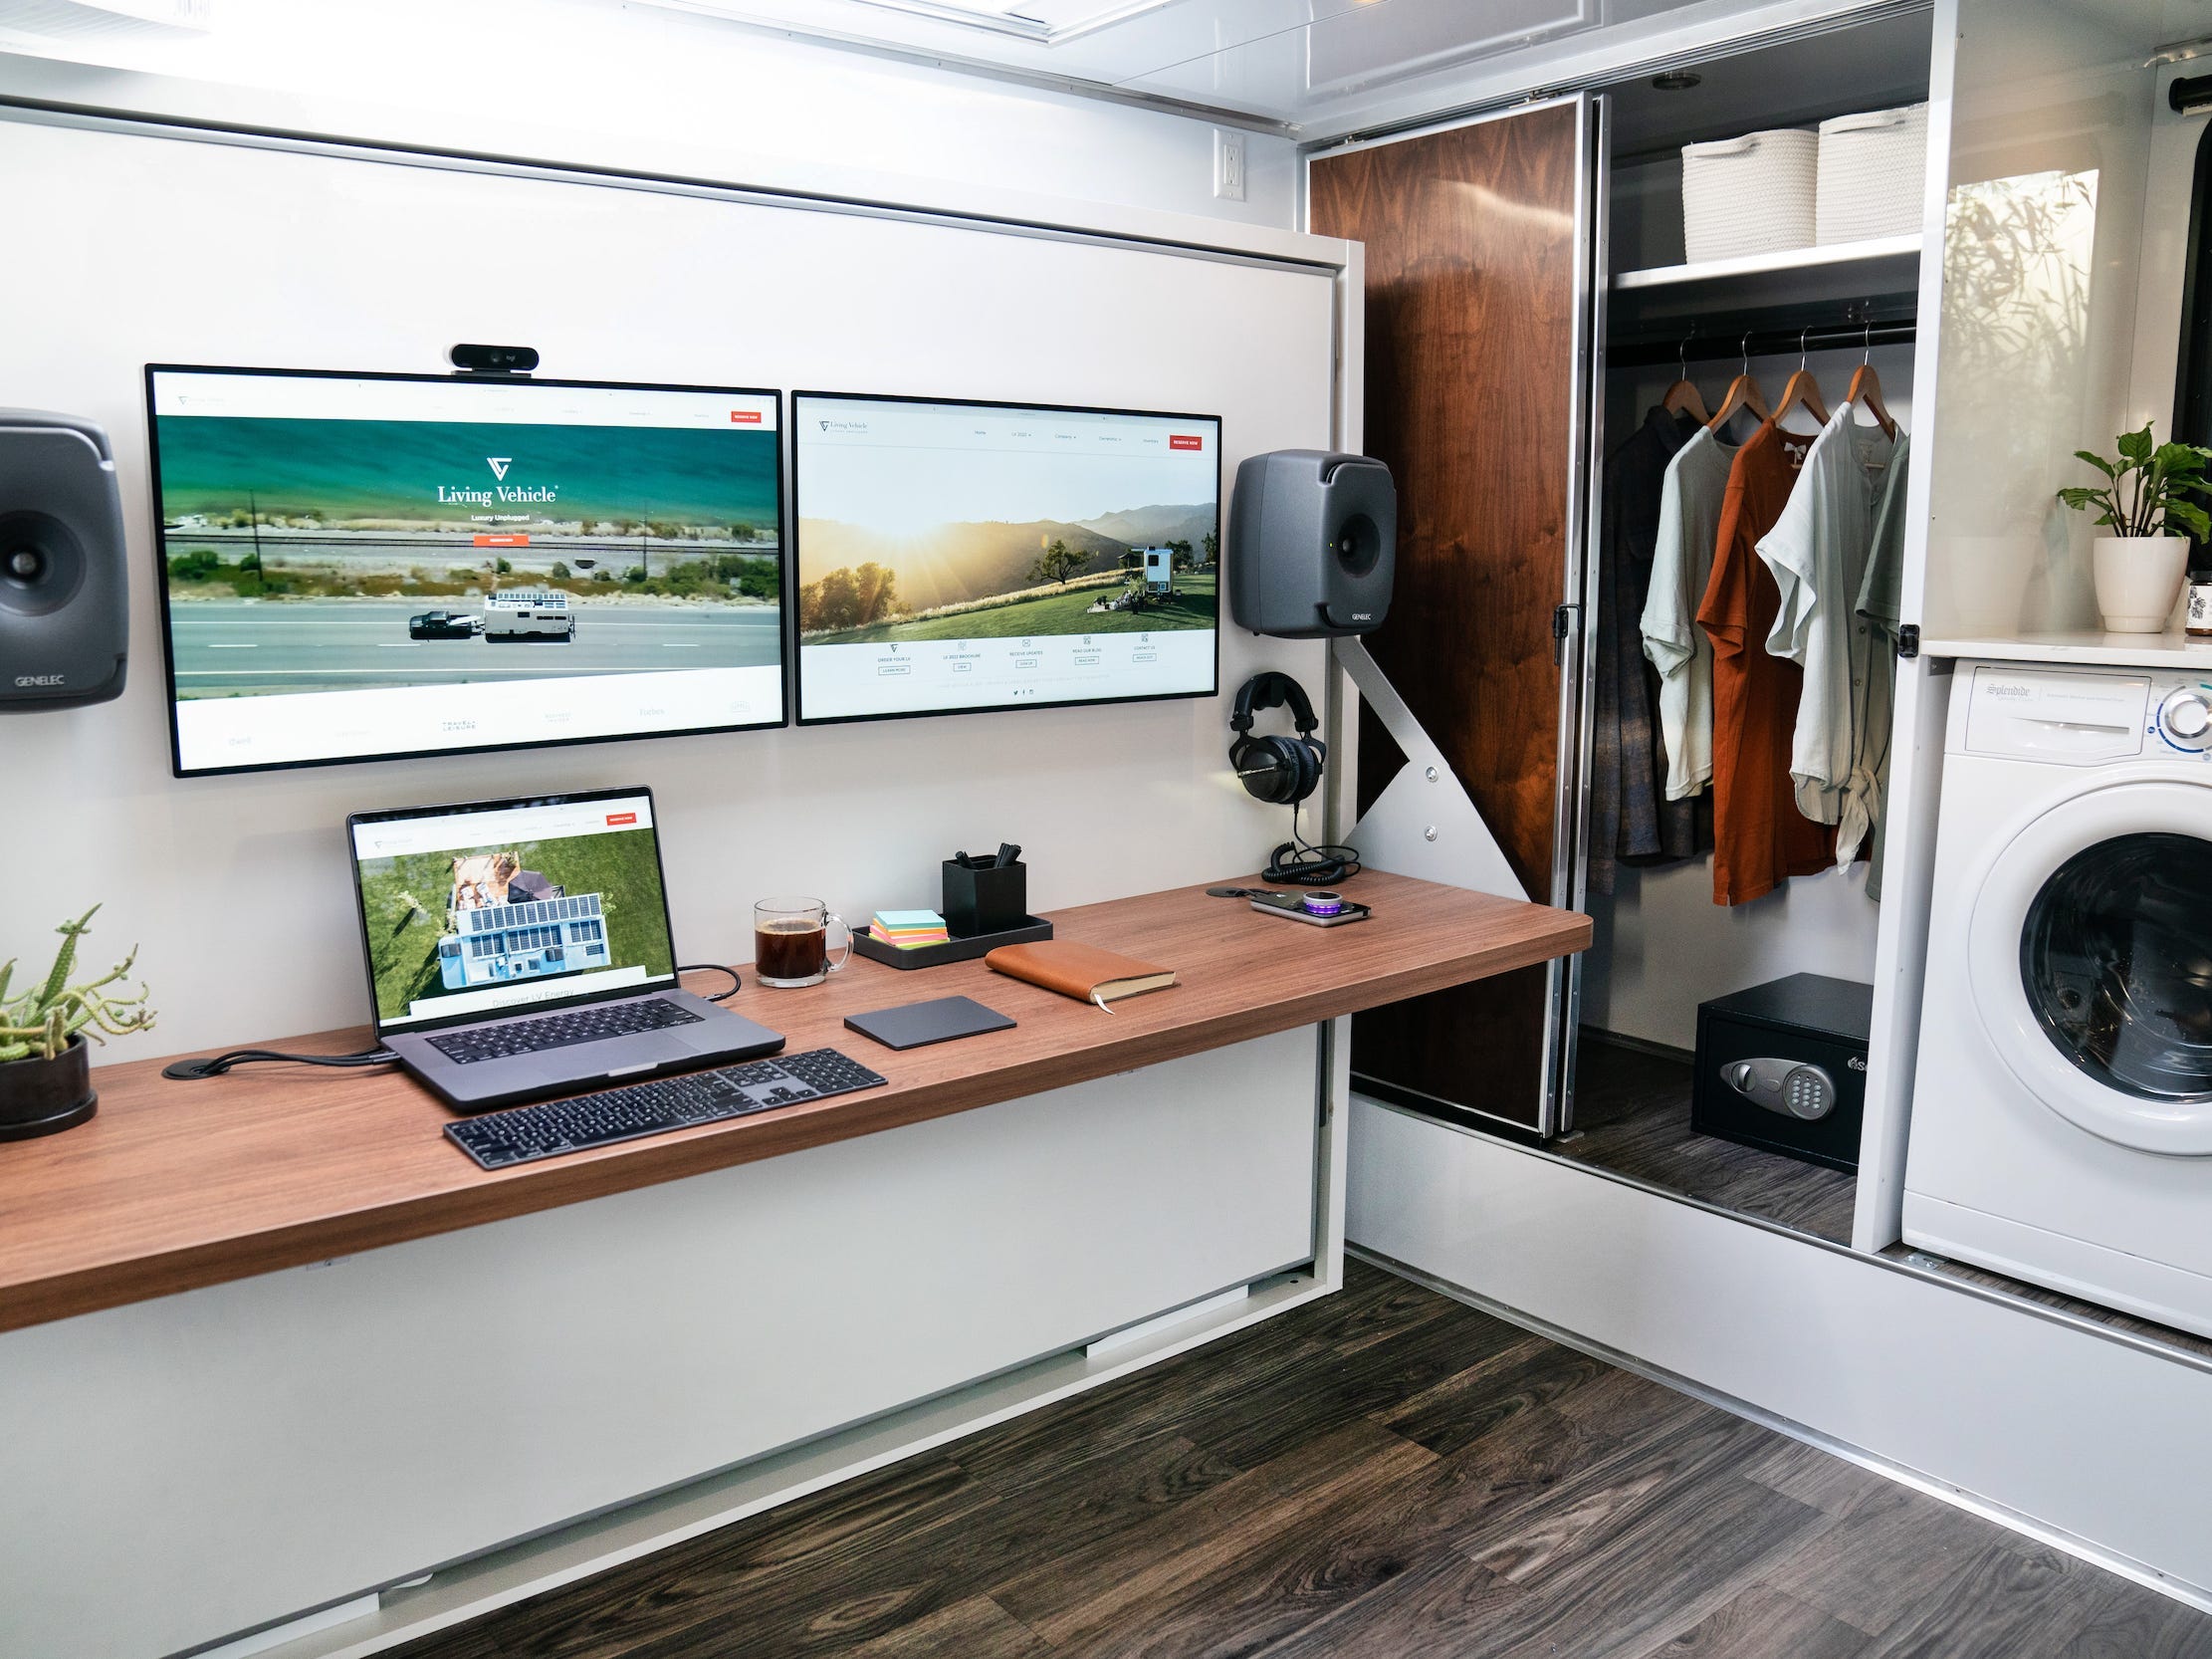 Een kantoorruimte met Apple producten zoals een laptop naast een wasmachine, kast.